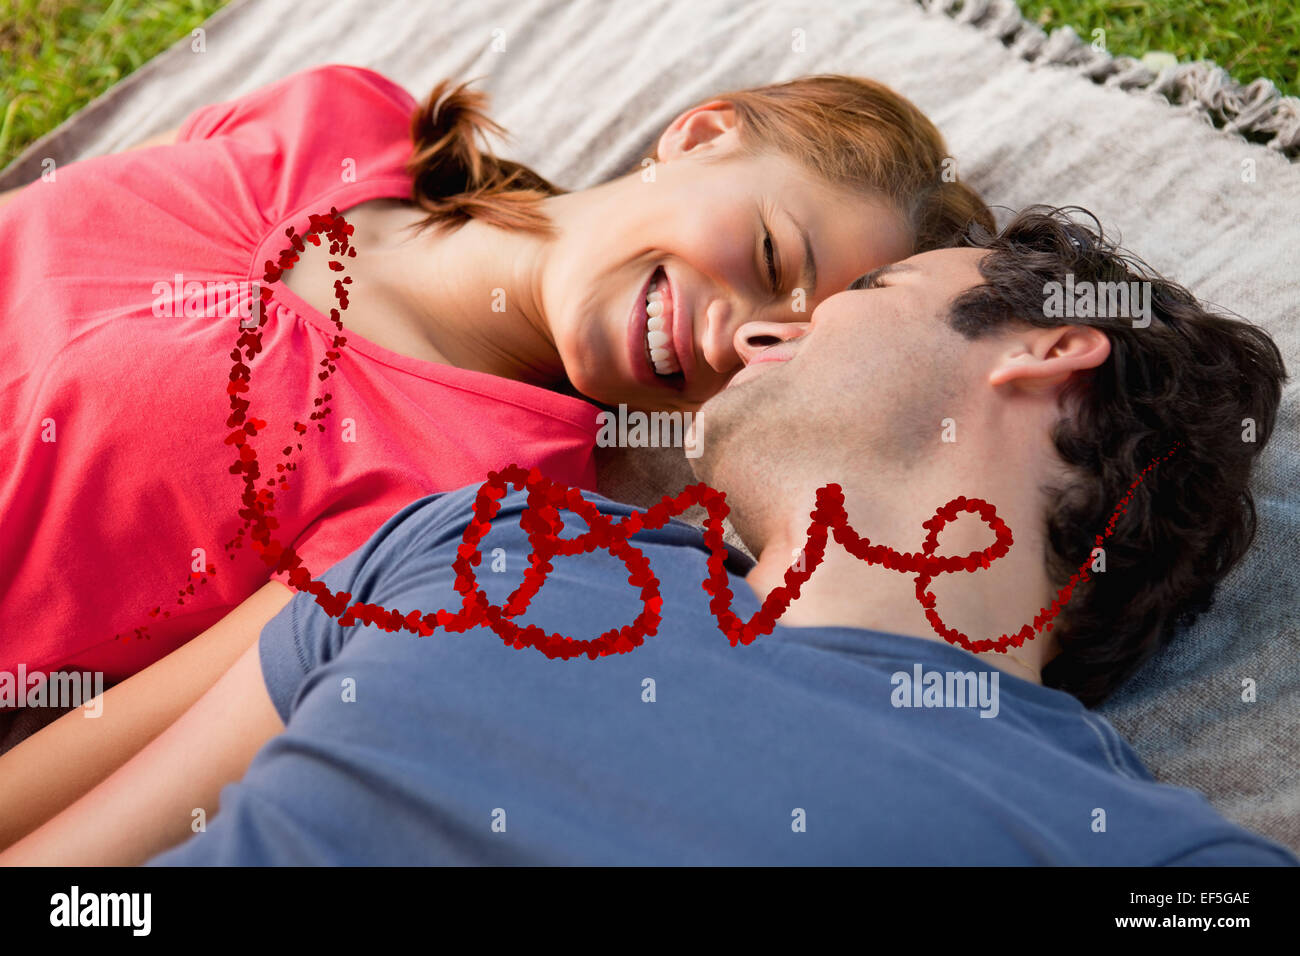 Imagen compuesta de mujer sonriendo mientras yacía junto a su amigo en una colcha Foto de stock